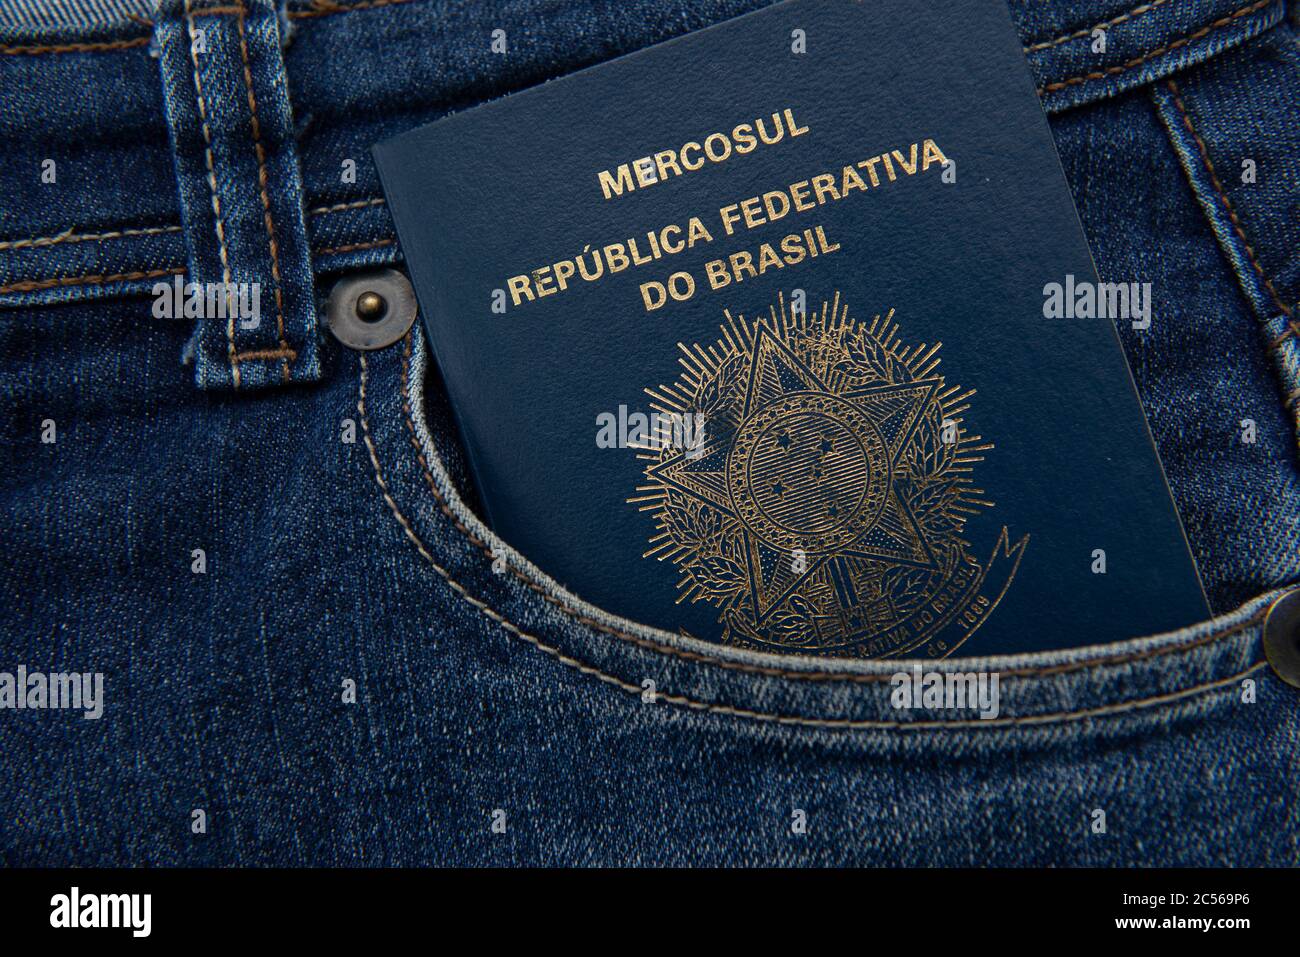 Brasilianischer Reisepass in Jeans-Tasche mit echten Notizen. Internationales Reise- und Tourismuskonzept. Geschäftsreise.Translate: Mercosur - Federative republik Stockfoto